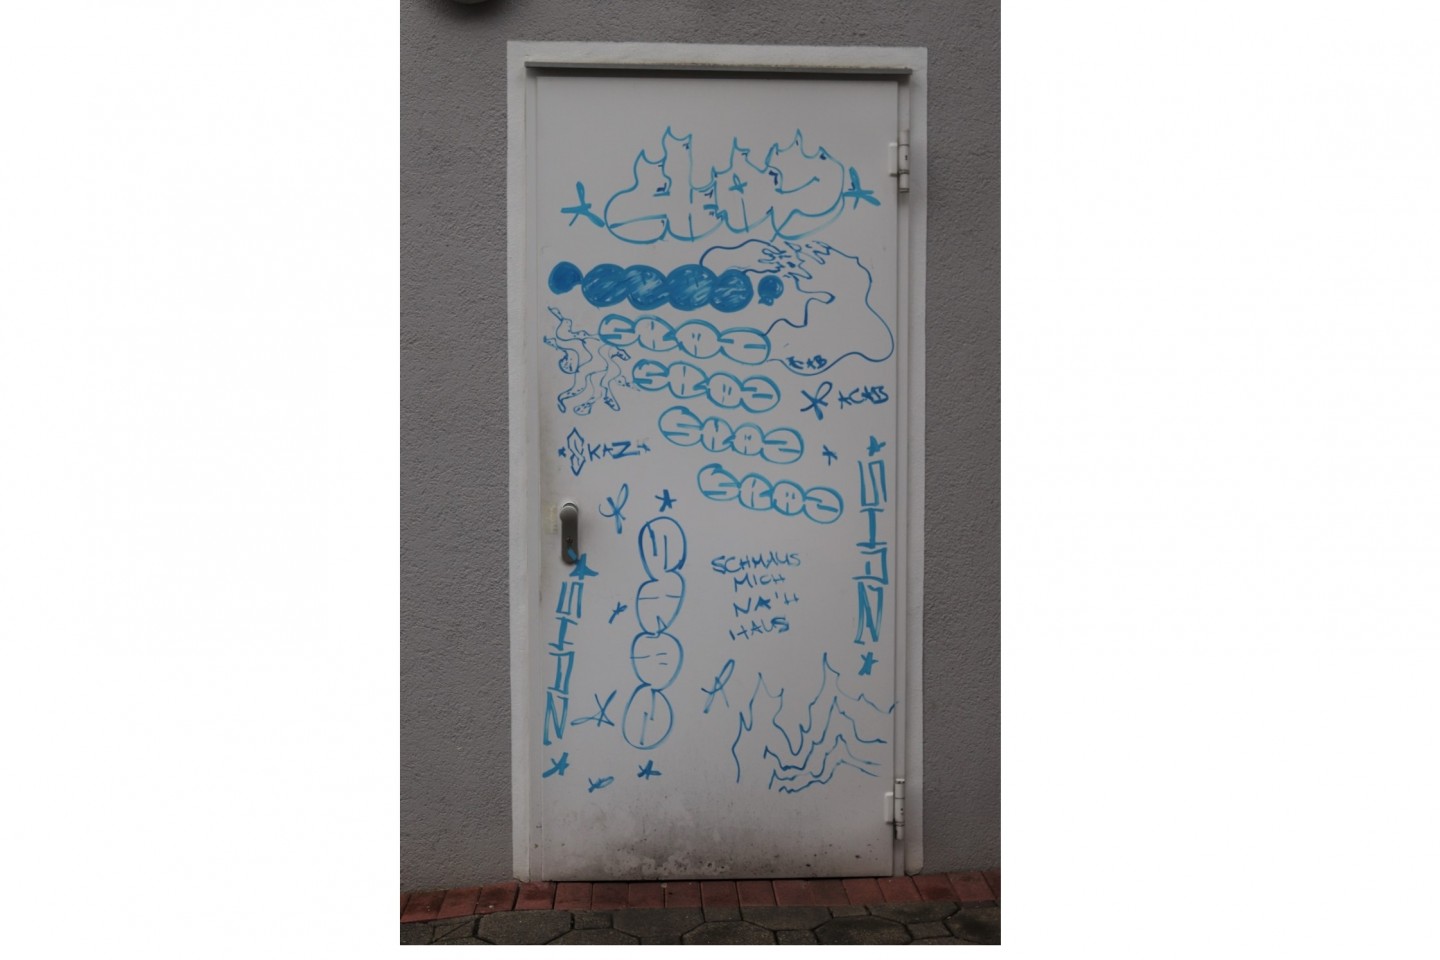 POL-HX: Sachbeschädigung durch Graffiti in Bad Driburg - Zeugen gesucht